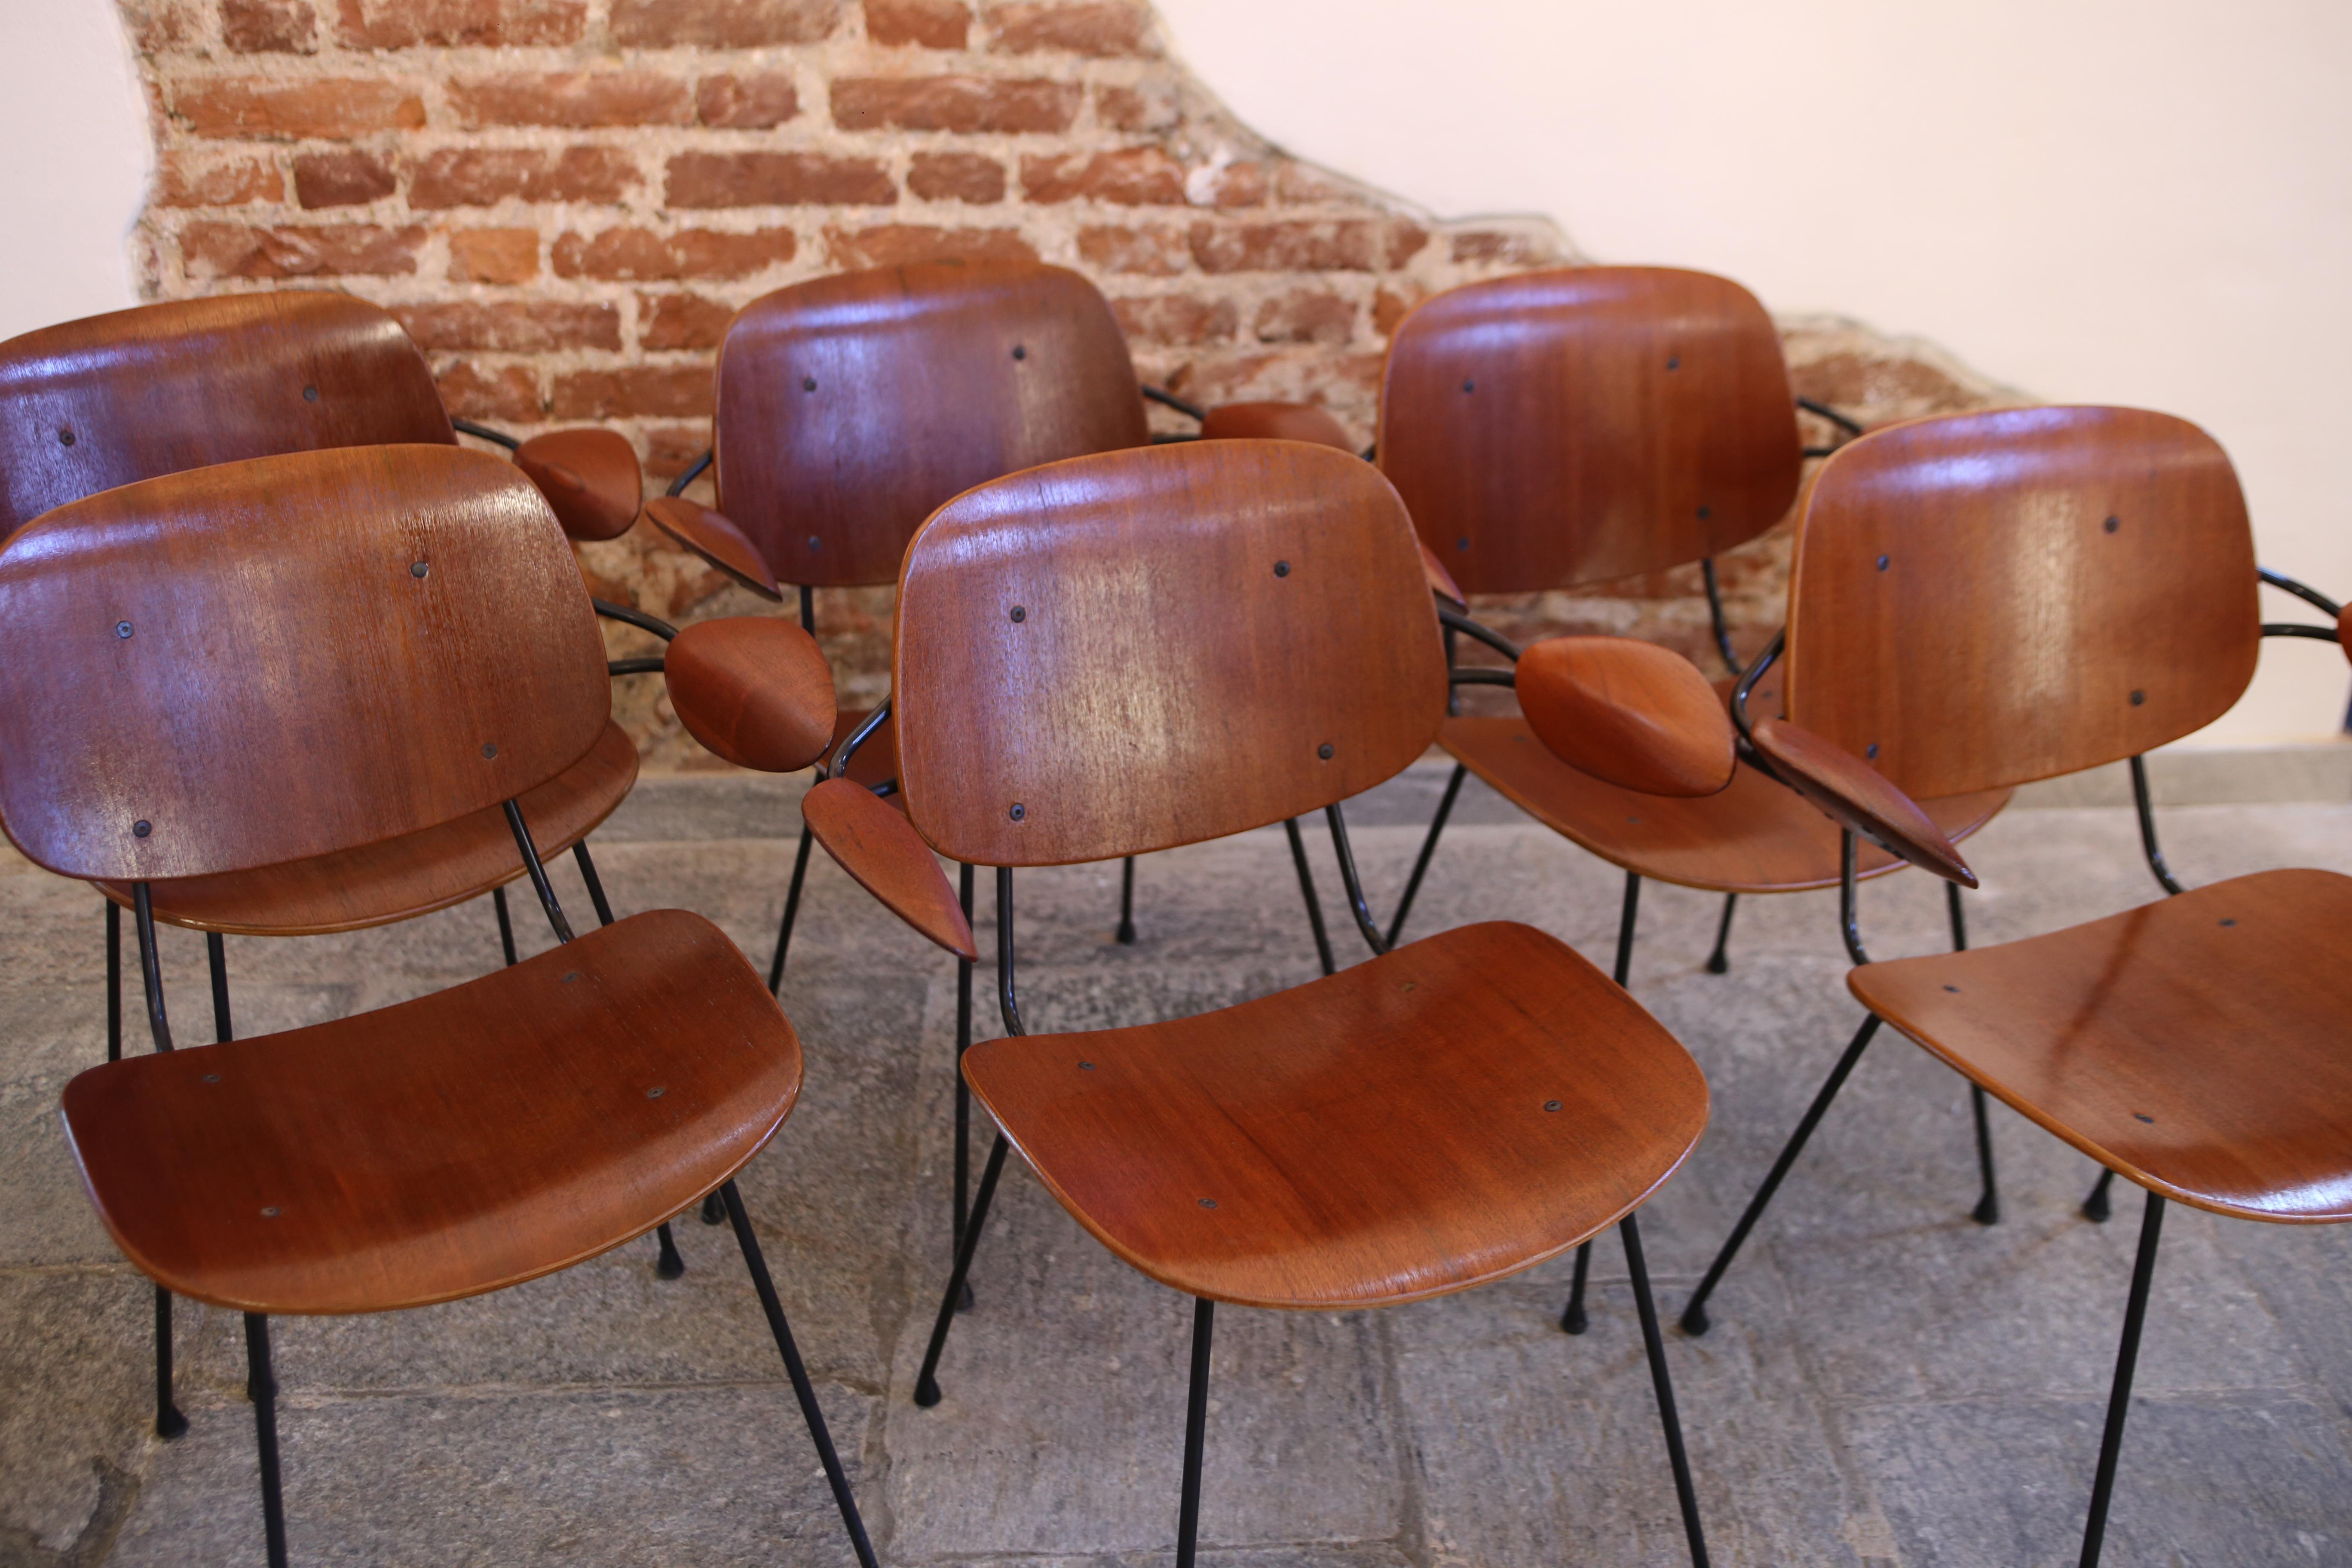 Rare ensemble de 6 fauteuils de Carlo Hauner pour Forma Italia des années 1950.
ces fauteuils en bois courbé plaqué d'acajou, produits par l'entreprise Forma, basée à Brescia.
Les accoudoirs sont en bois d'acajou sculpté, ce qui confère à ces